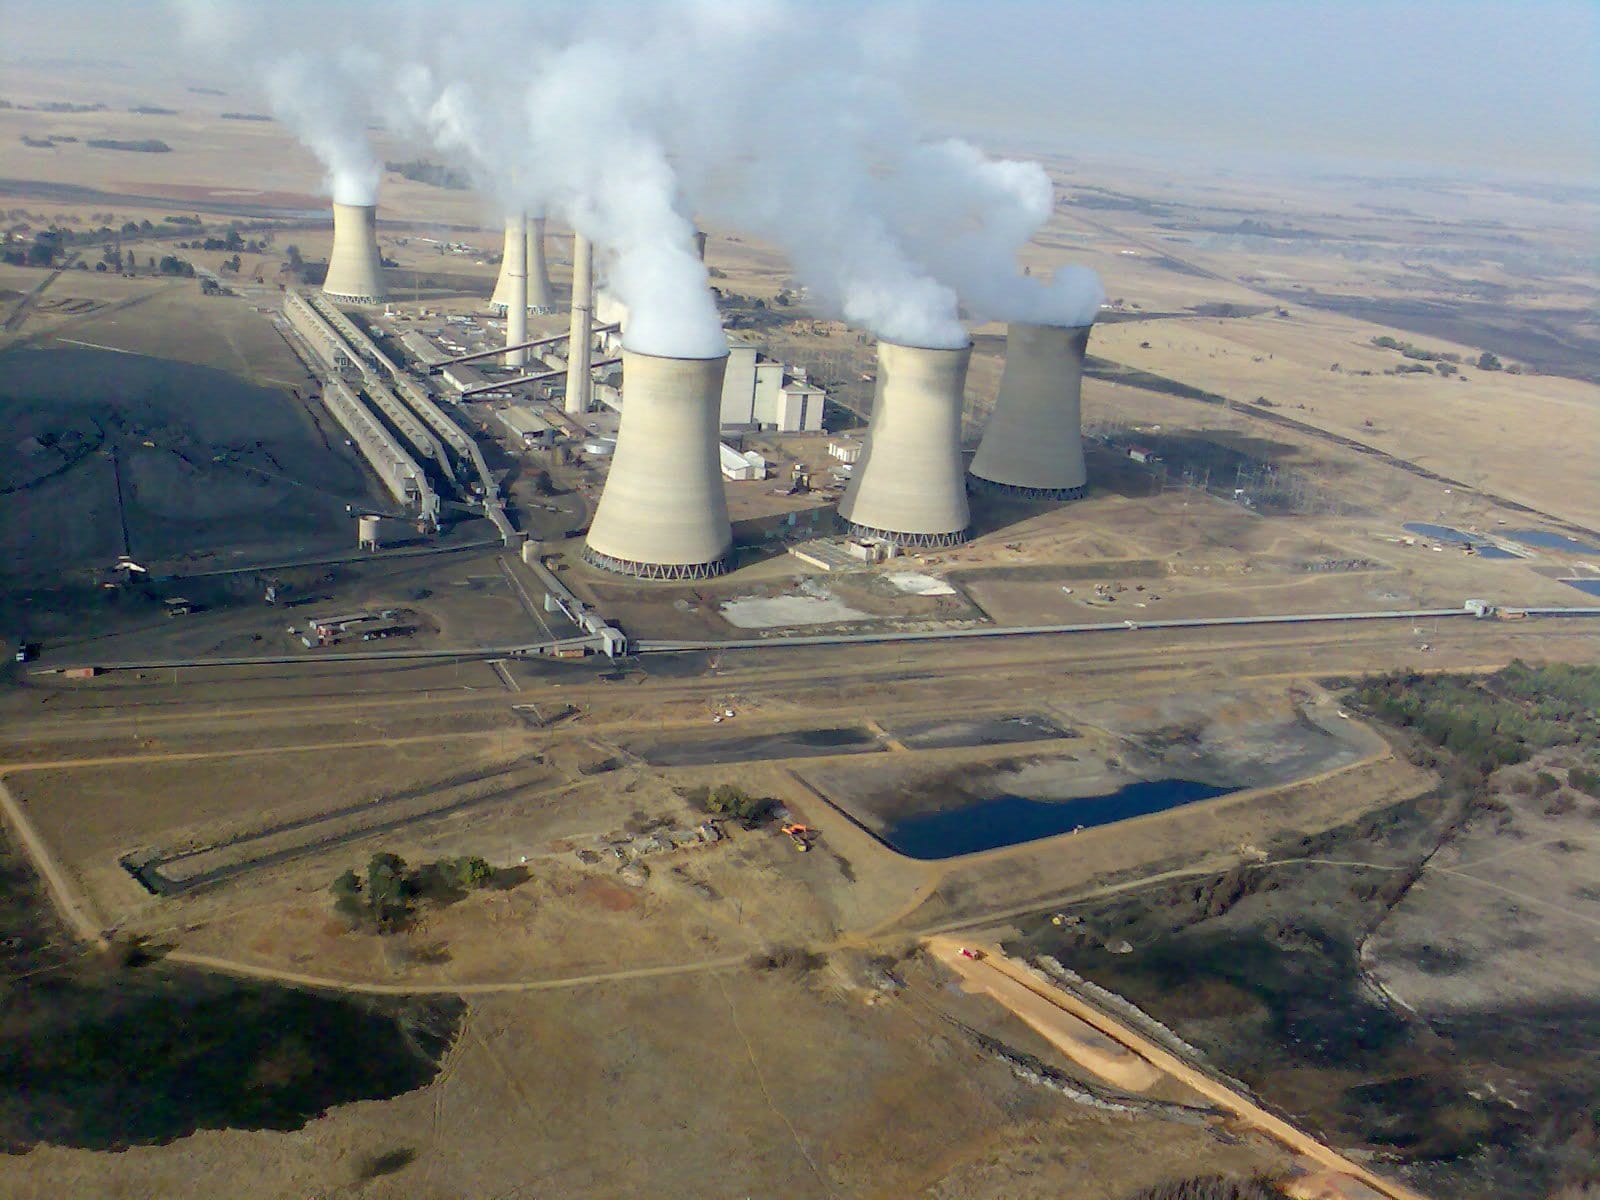 South Africa’s Eskom seeks $221 million damages over coal deal